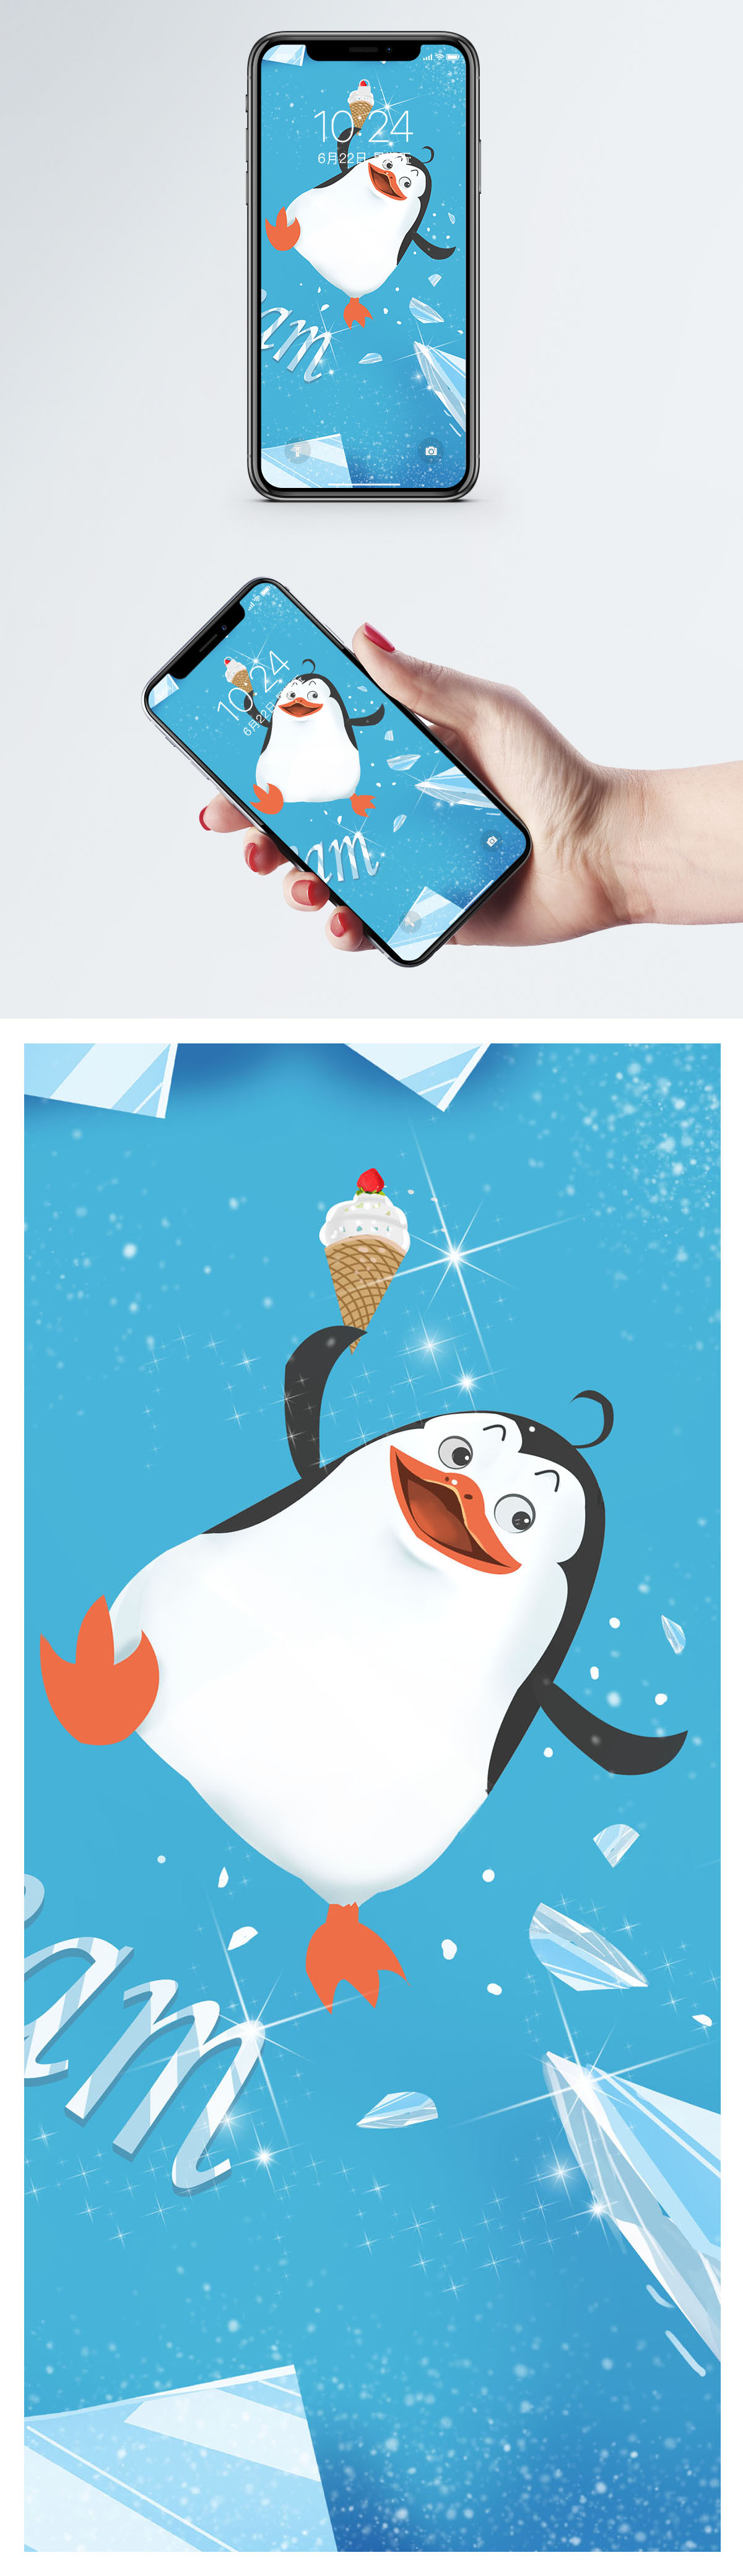 ペンギンかわいい携帯壁紙イメージ 背景 Id 400482817 Prf画像フォーマットjpg Jp Lovepik Com